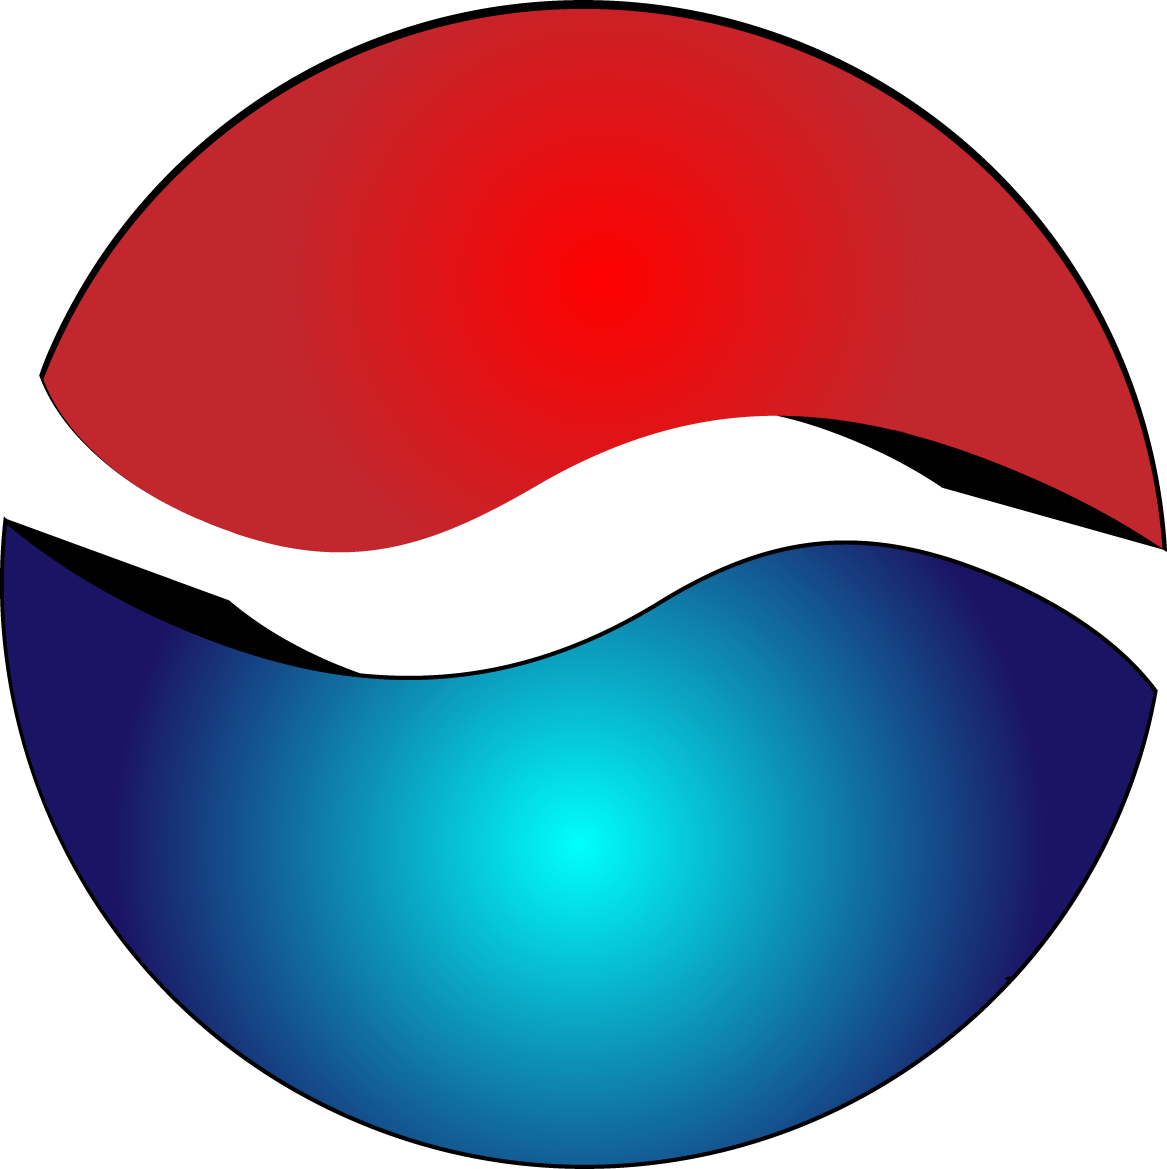 pepsico logo vector